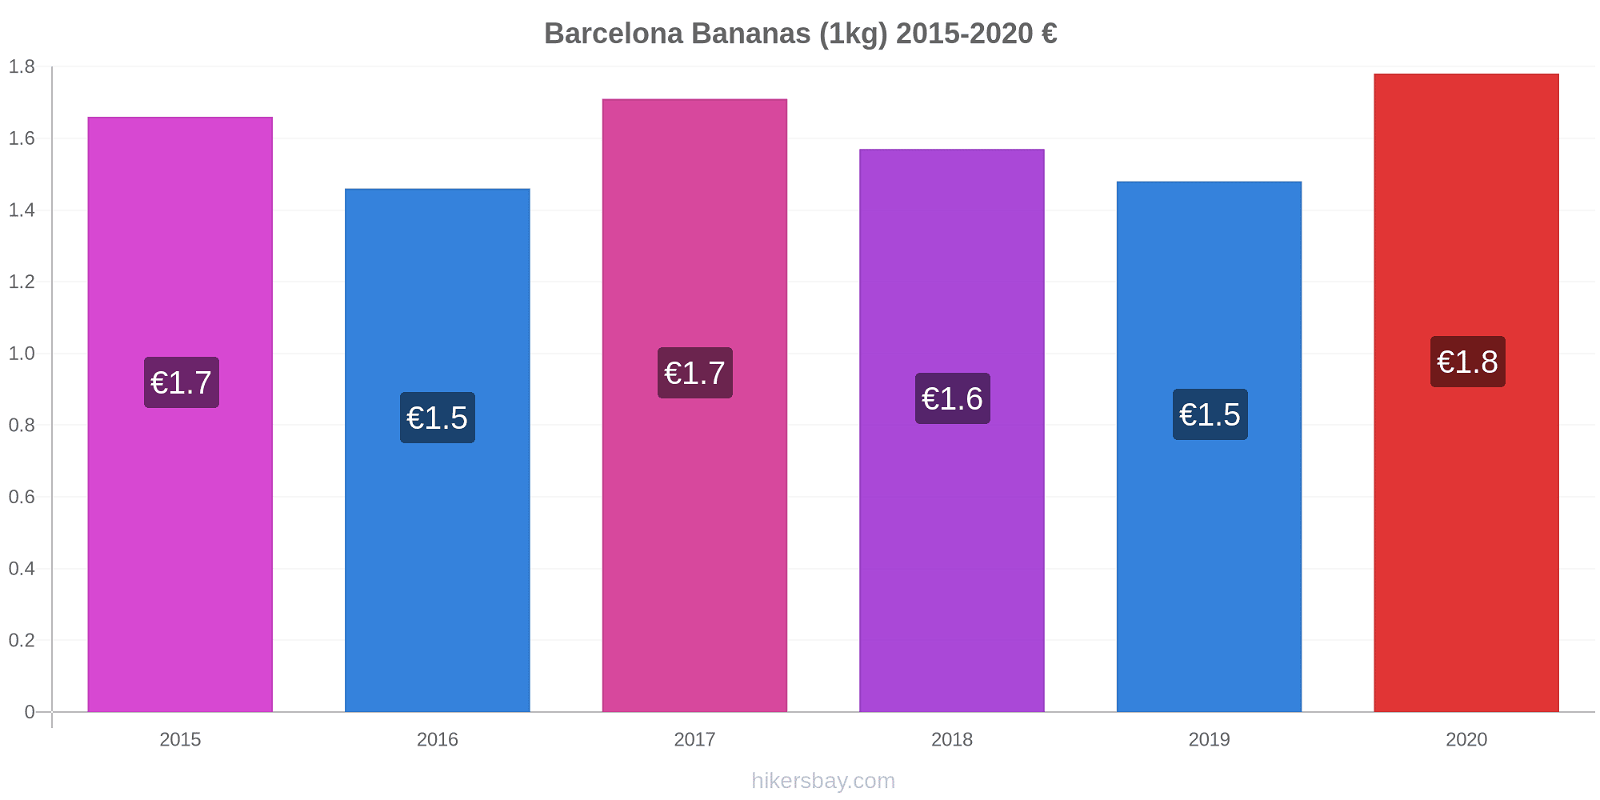 Barcelona price changes Bananas (1kg) hikersbay.com